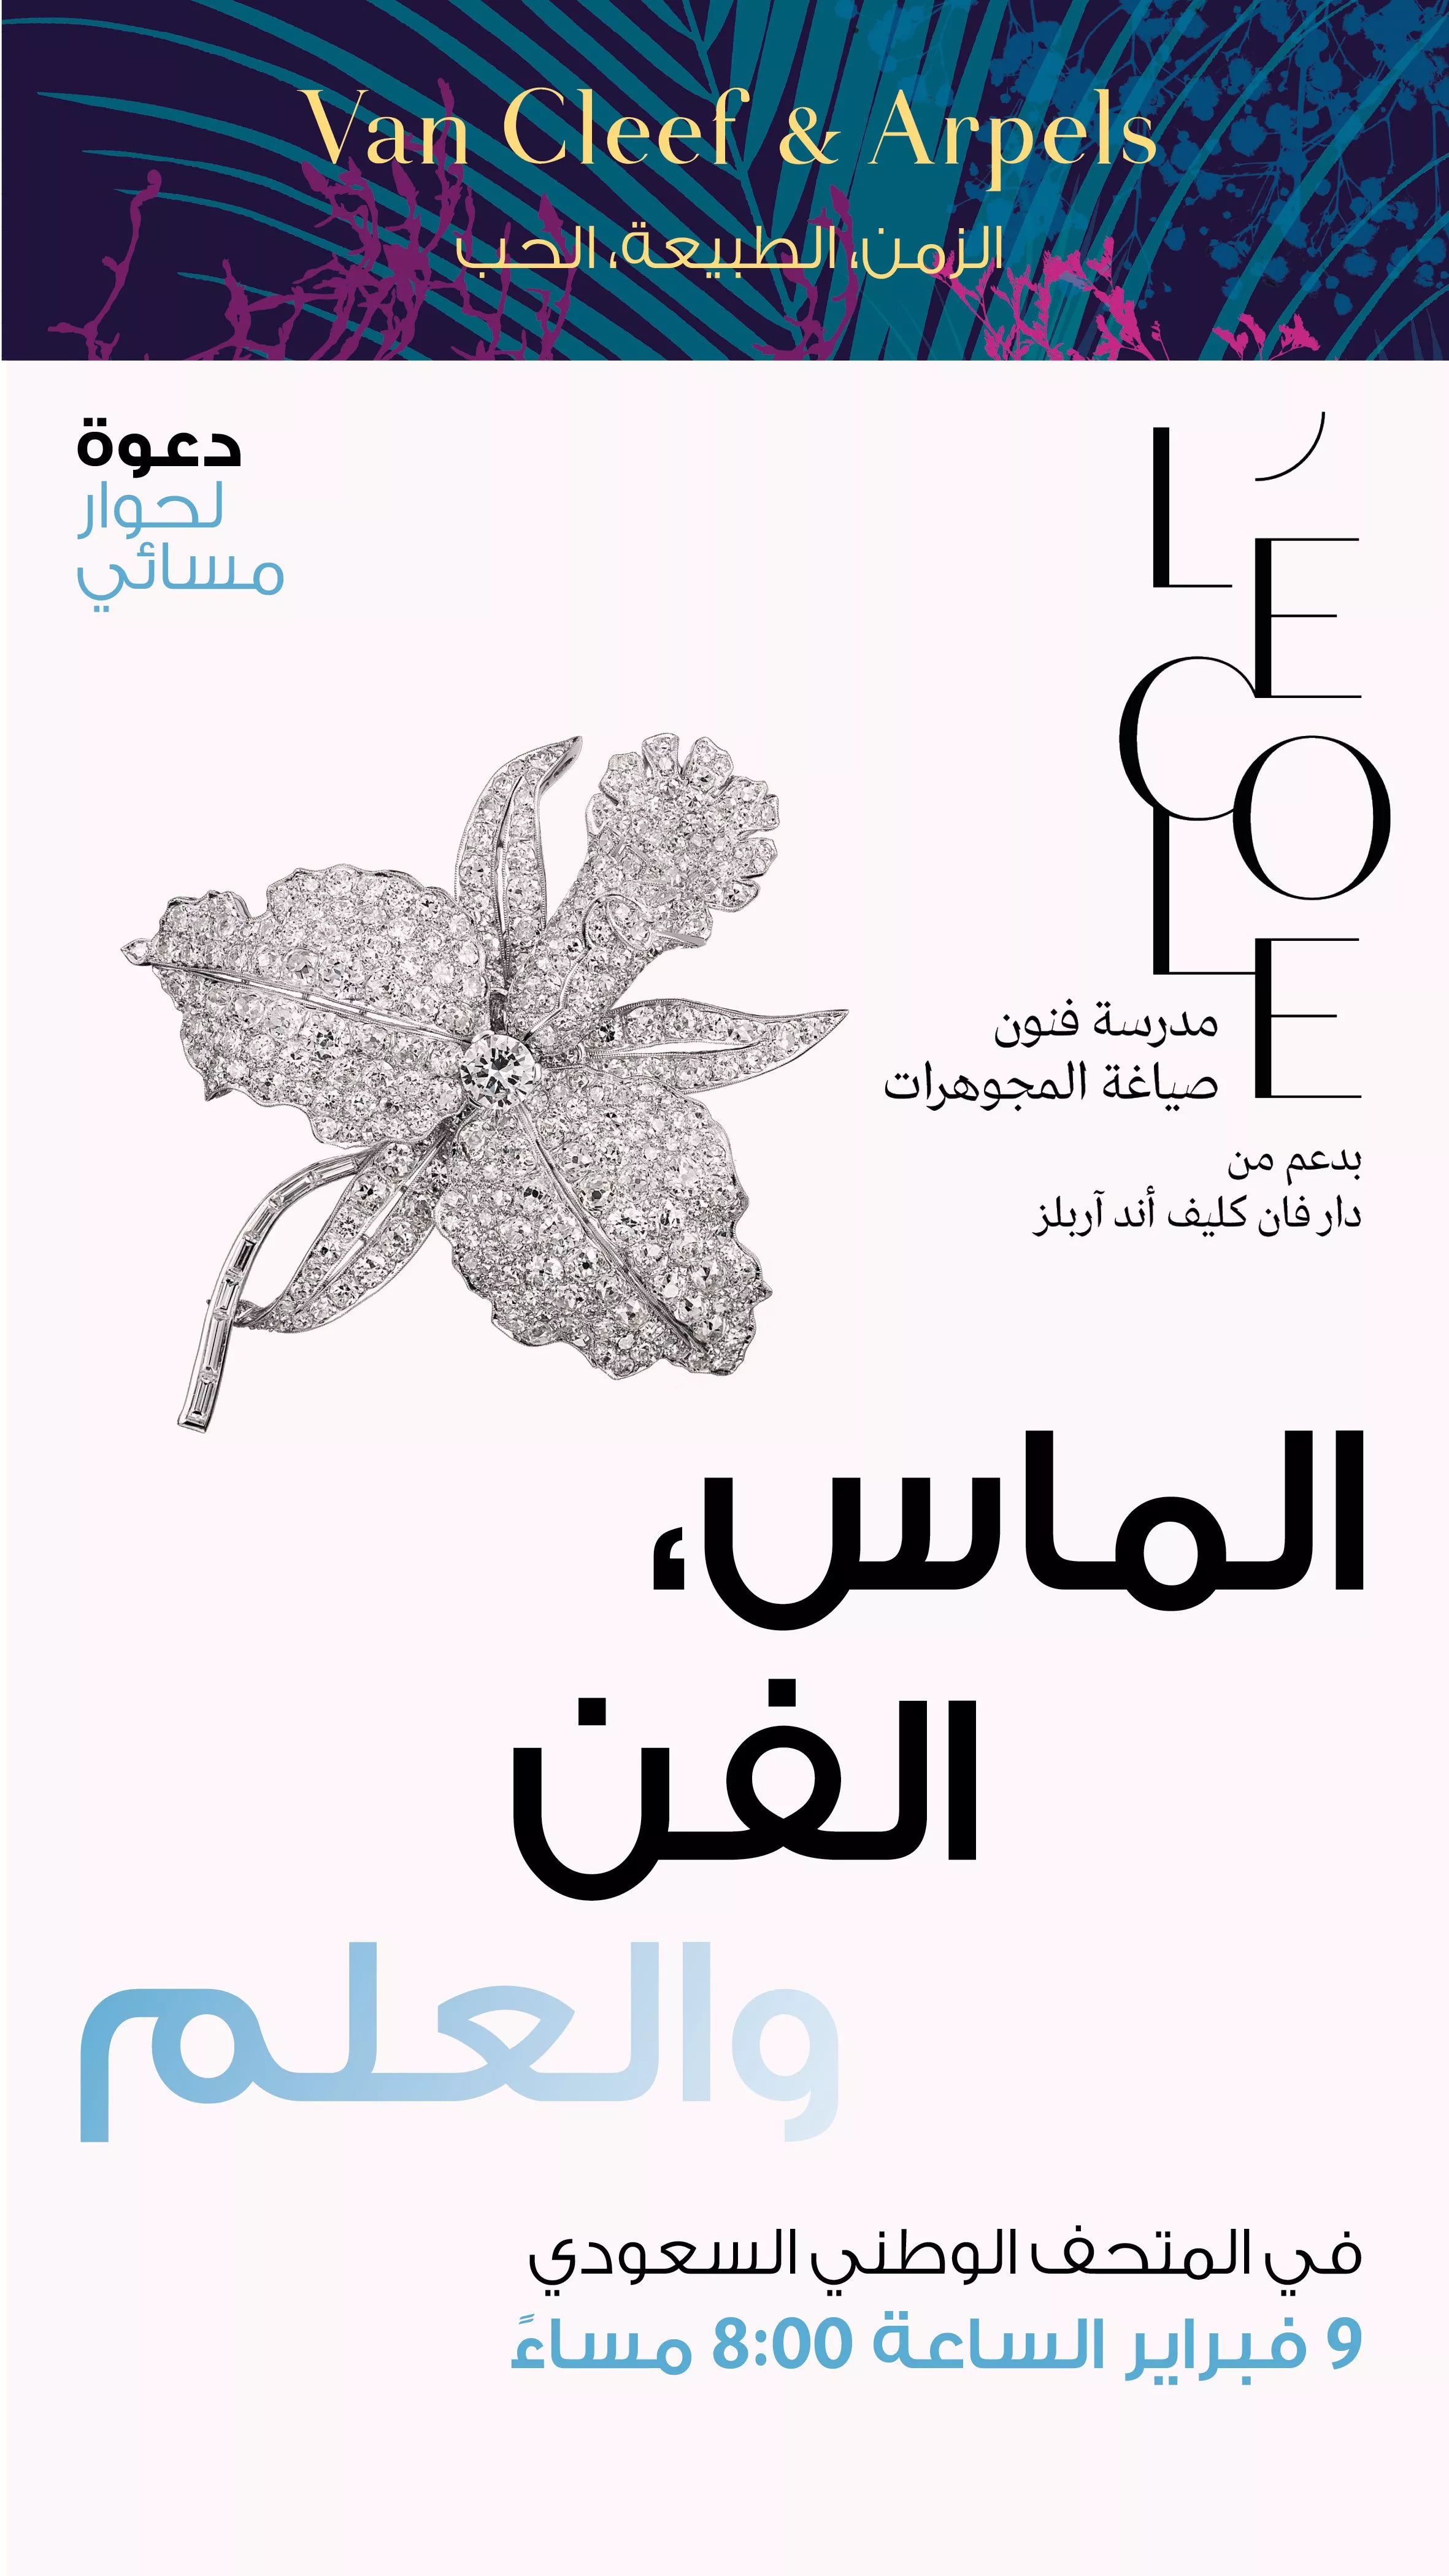 برنامج فبراير 2023 لمعرض فان كليف اند آربلز في الرياض